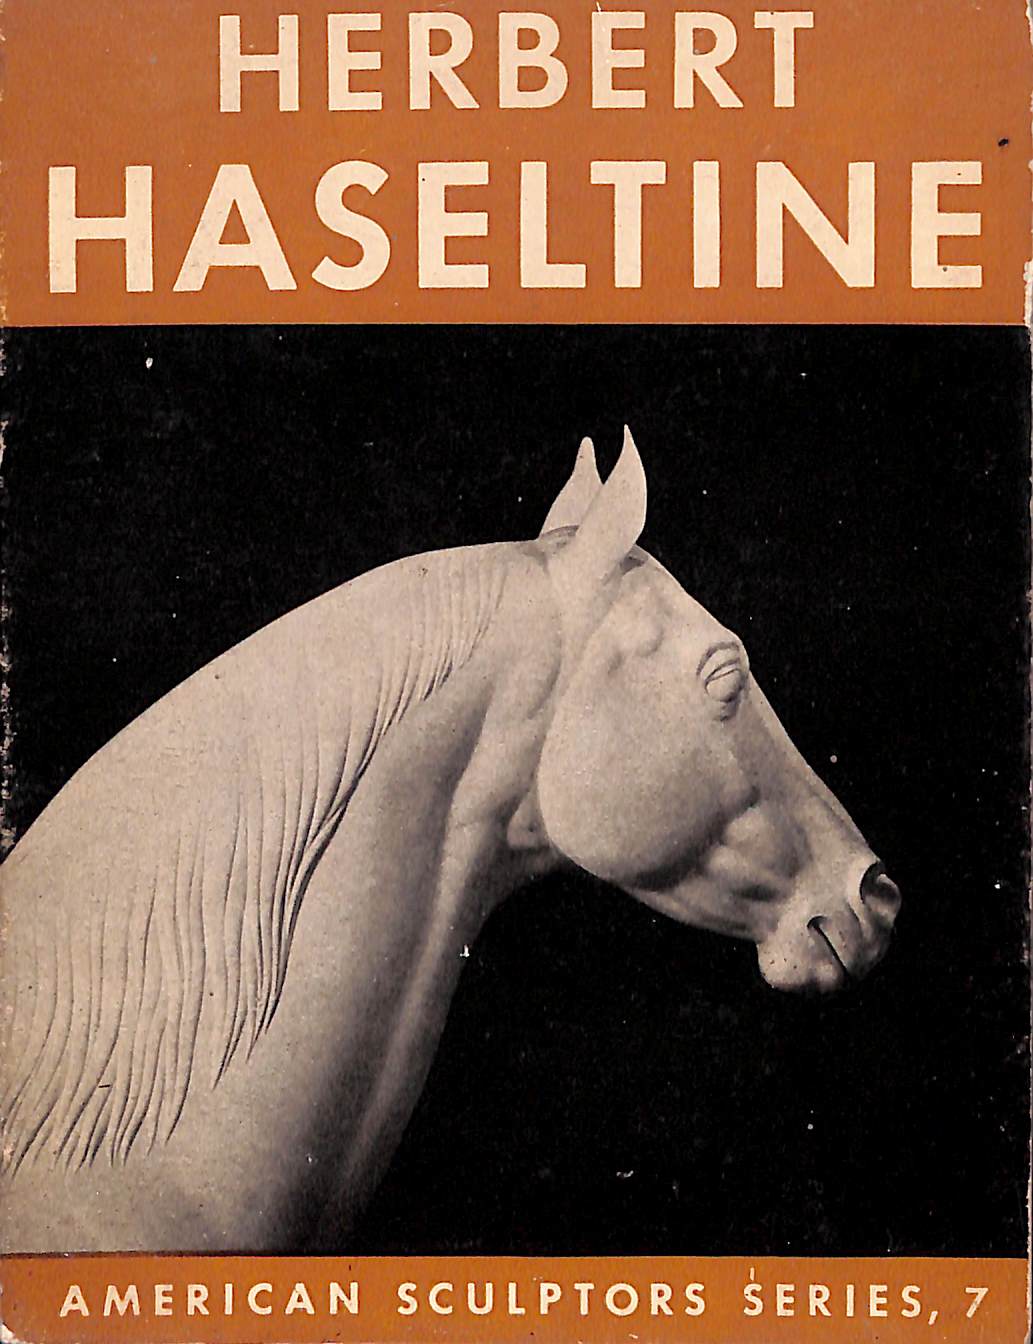 "Herbert Haseltine" 1948